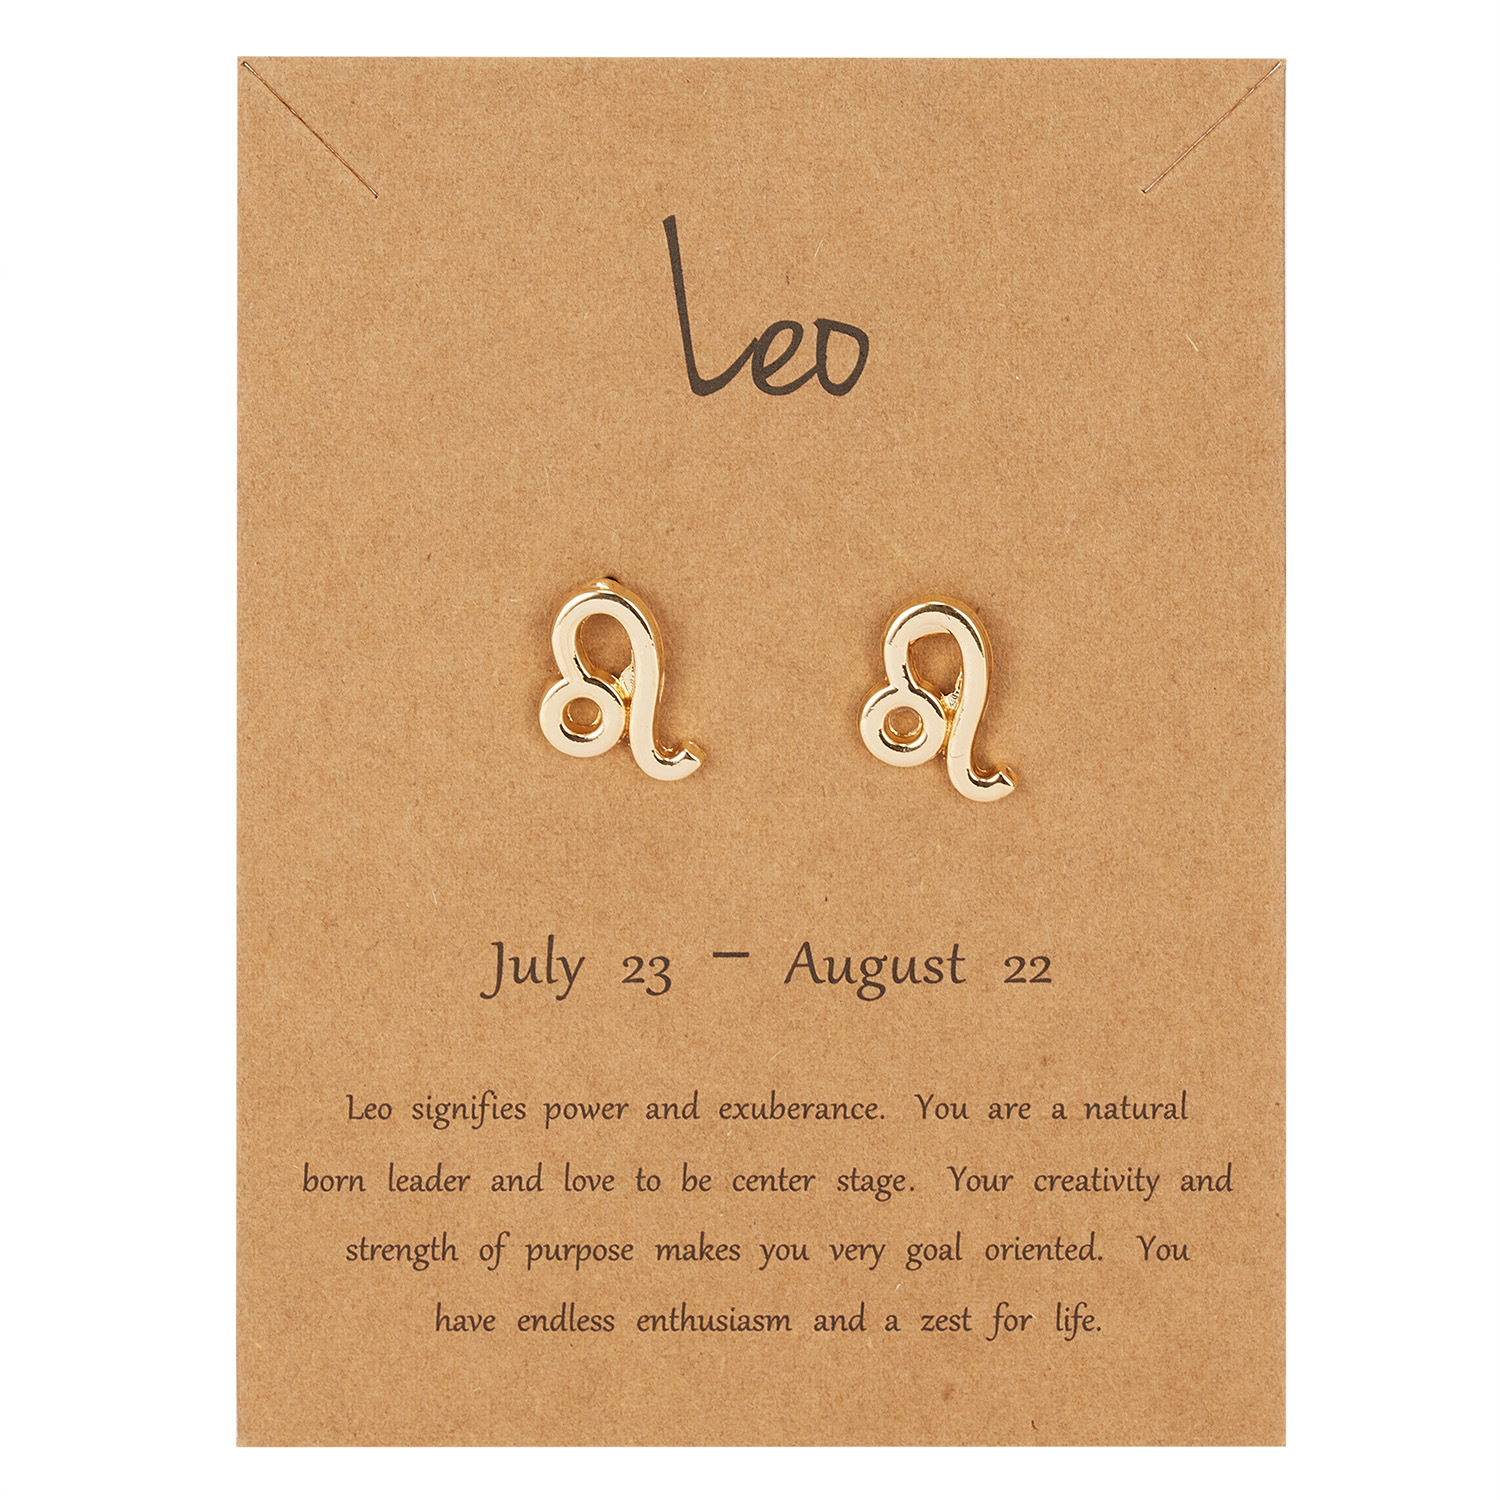 7:Leo